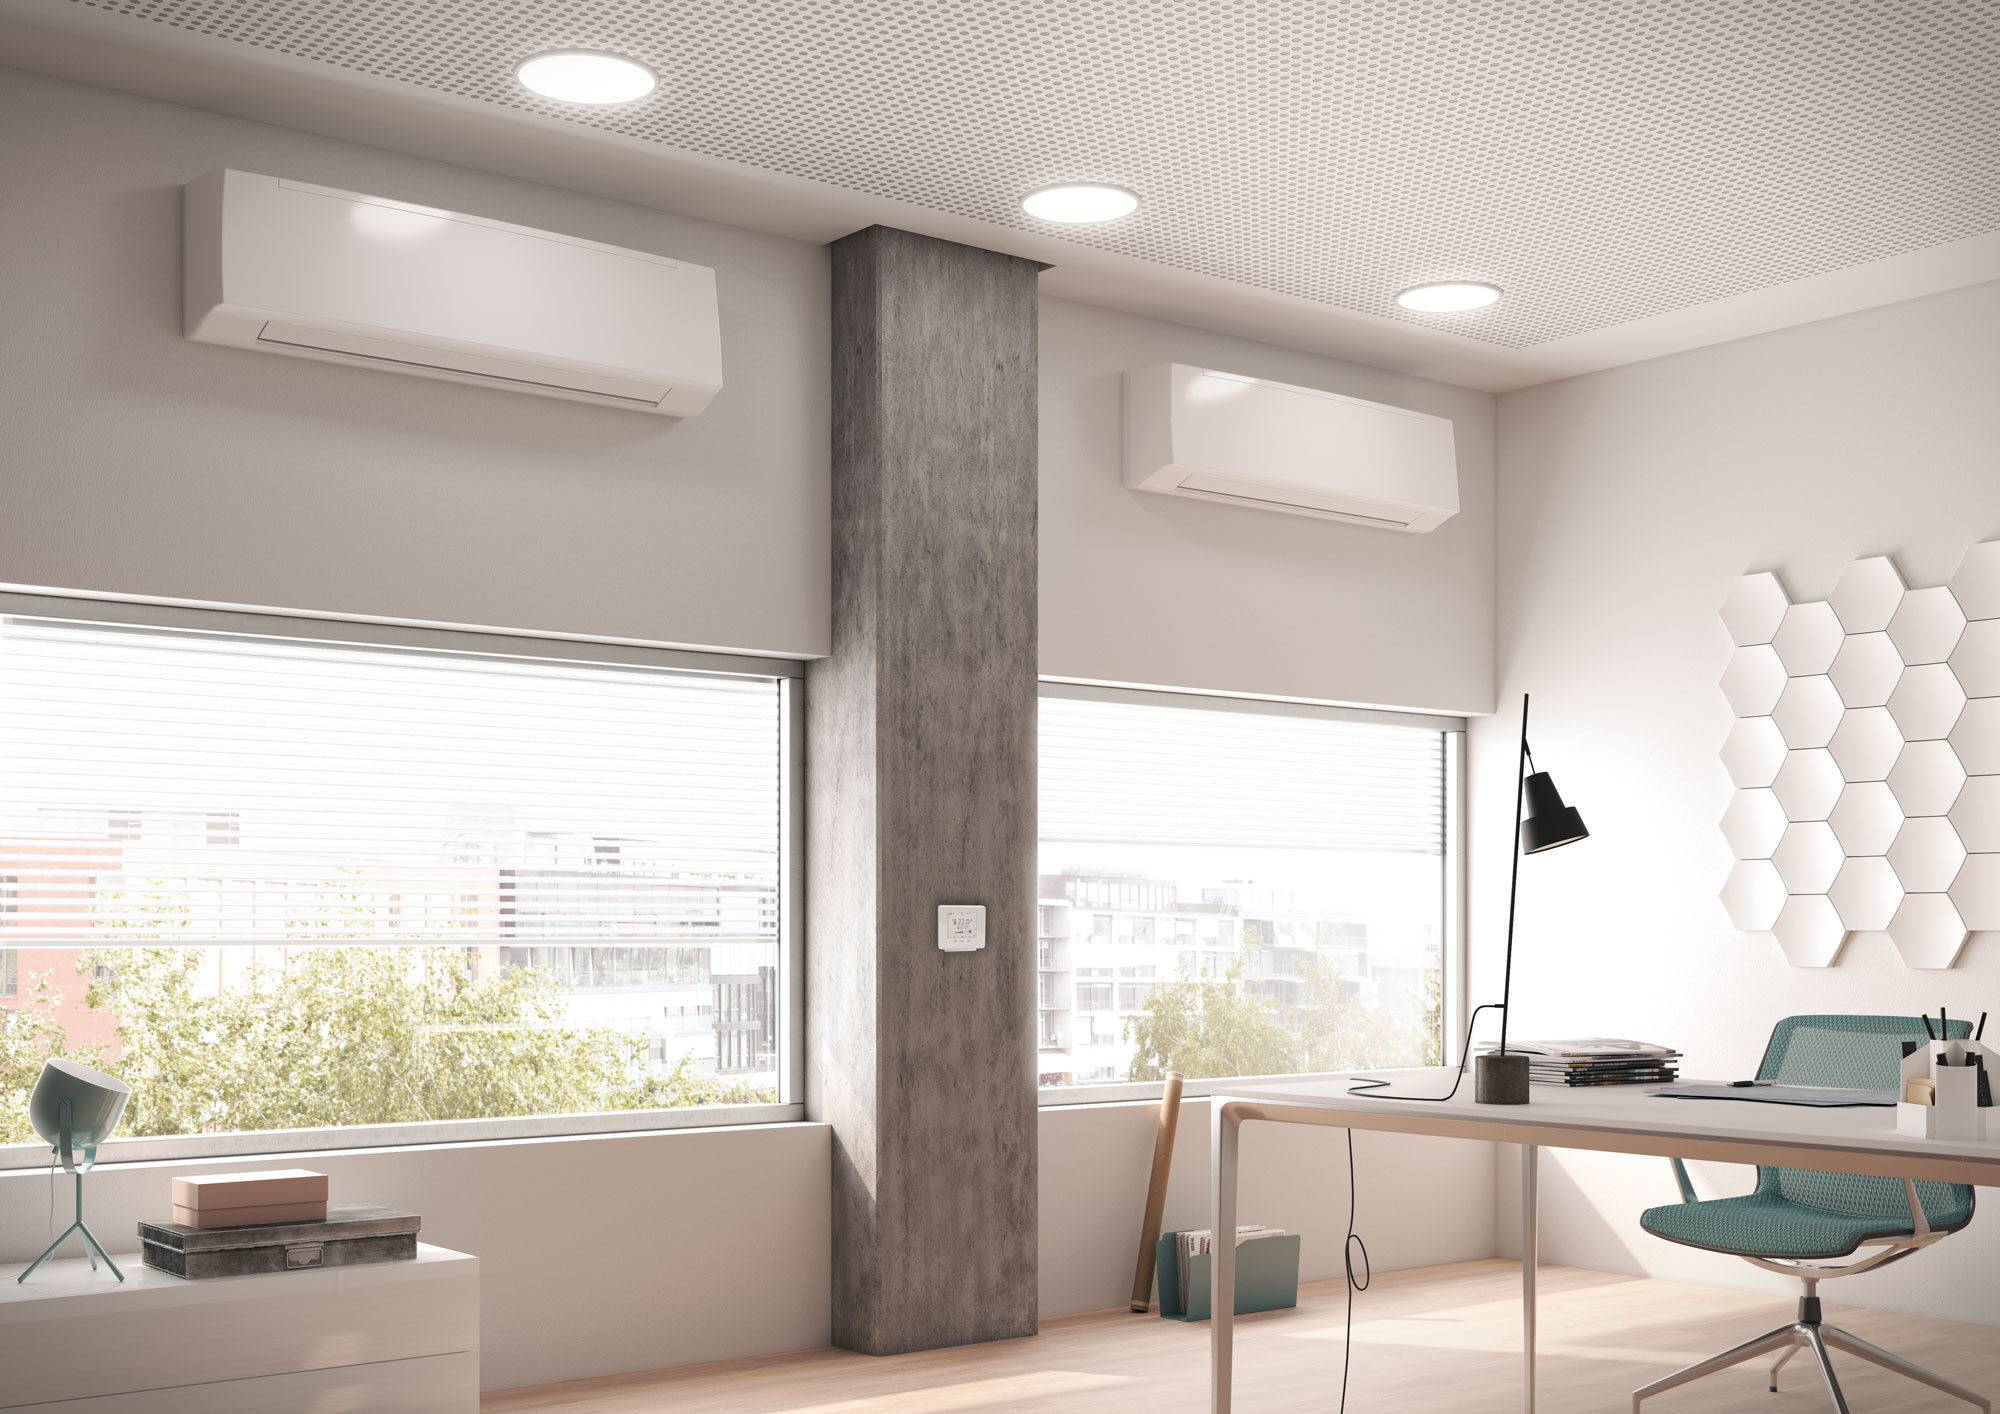 Фанкойлы Arbonia Condiline в виде настенного оборудования – поддержание температуры в офисе и квартире